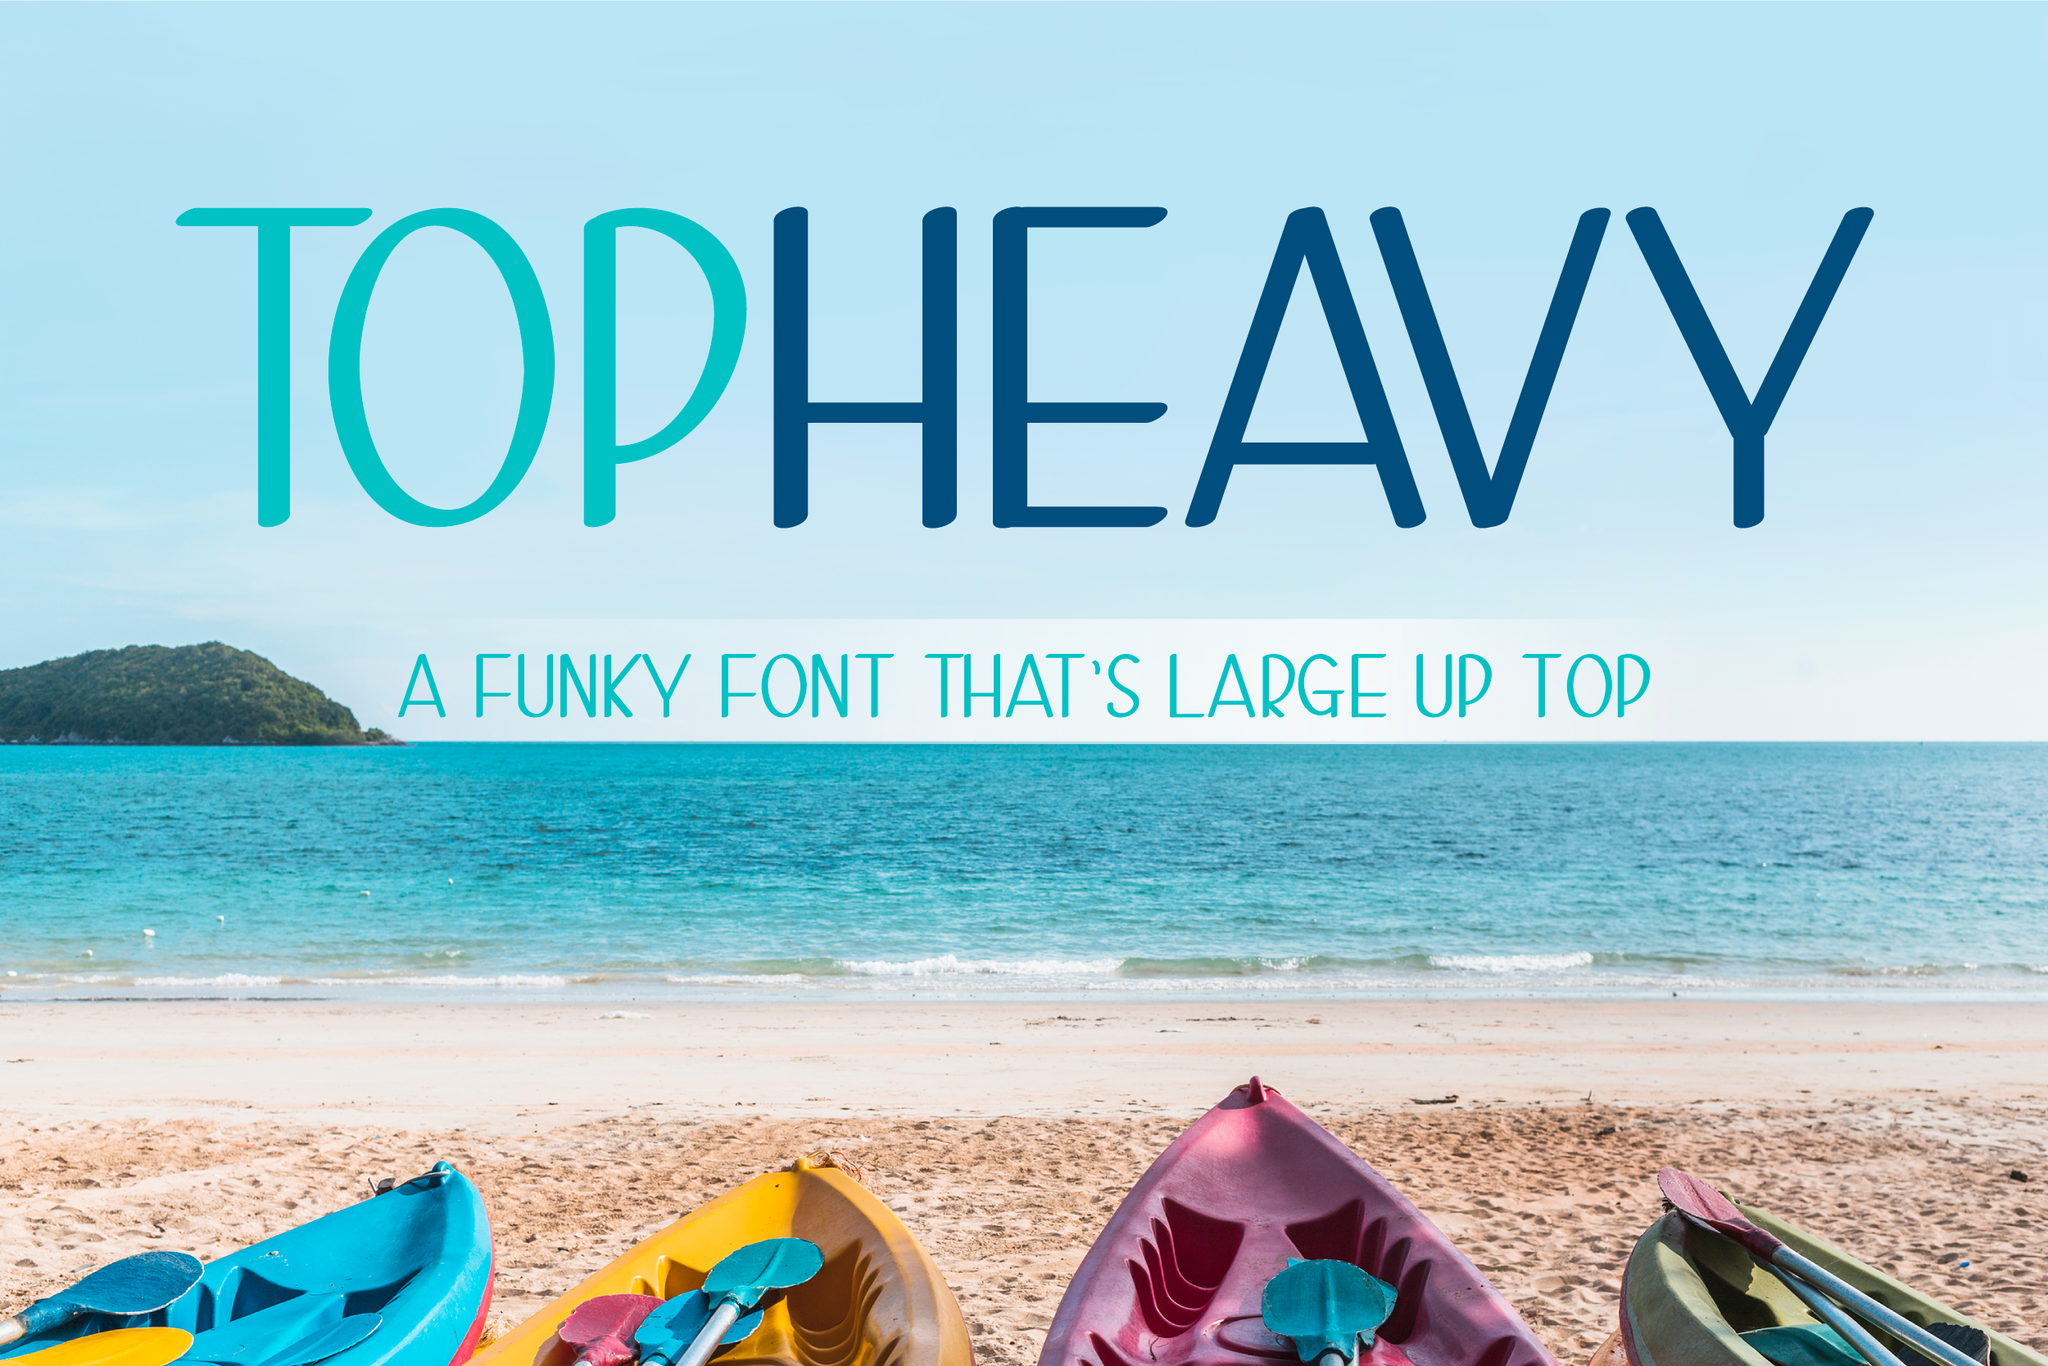 Top Heavy - 3 Funky Handwritten Fonts in 1!